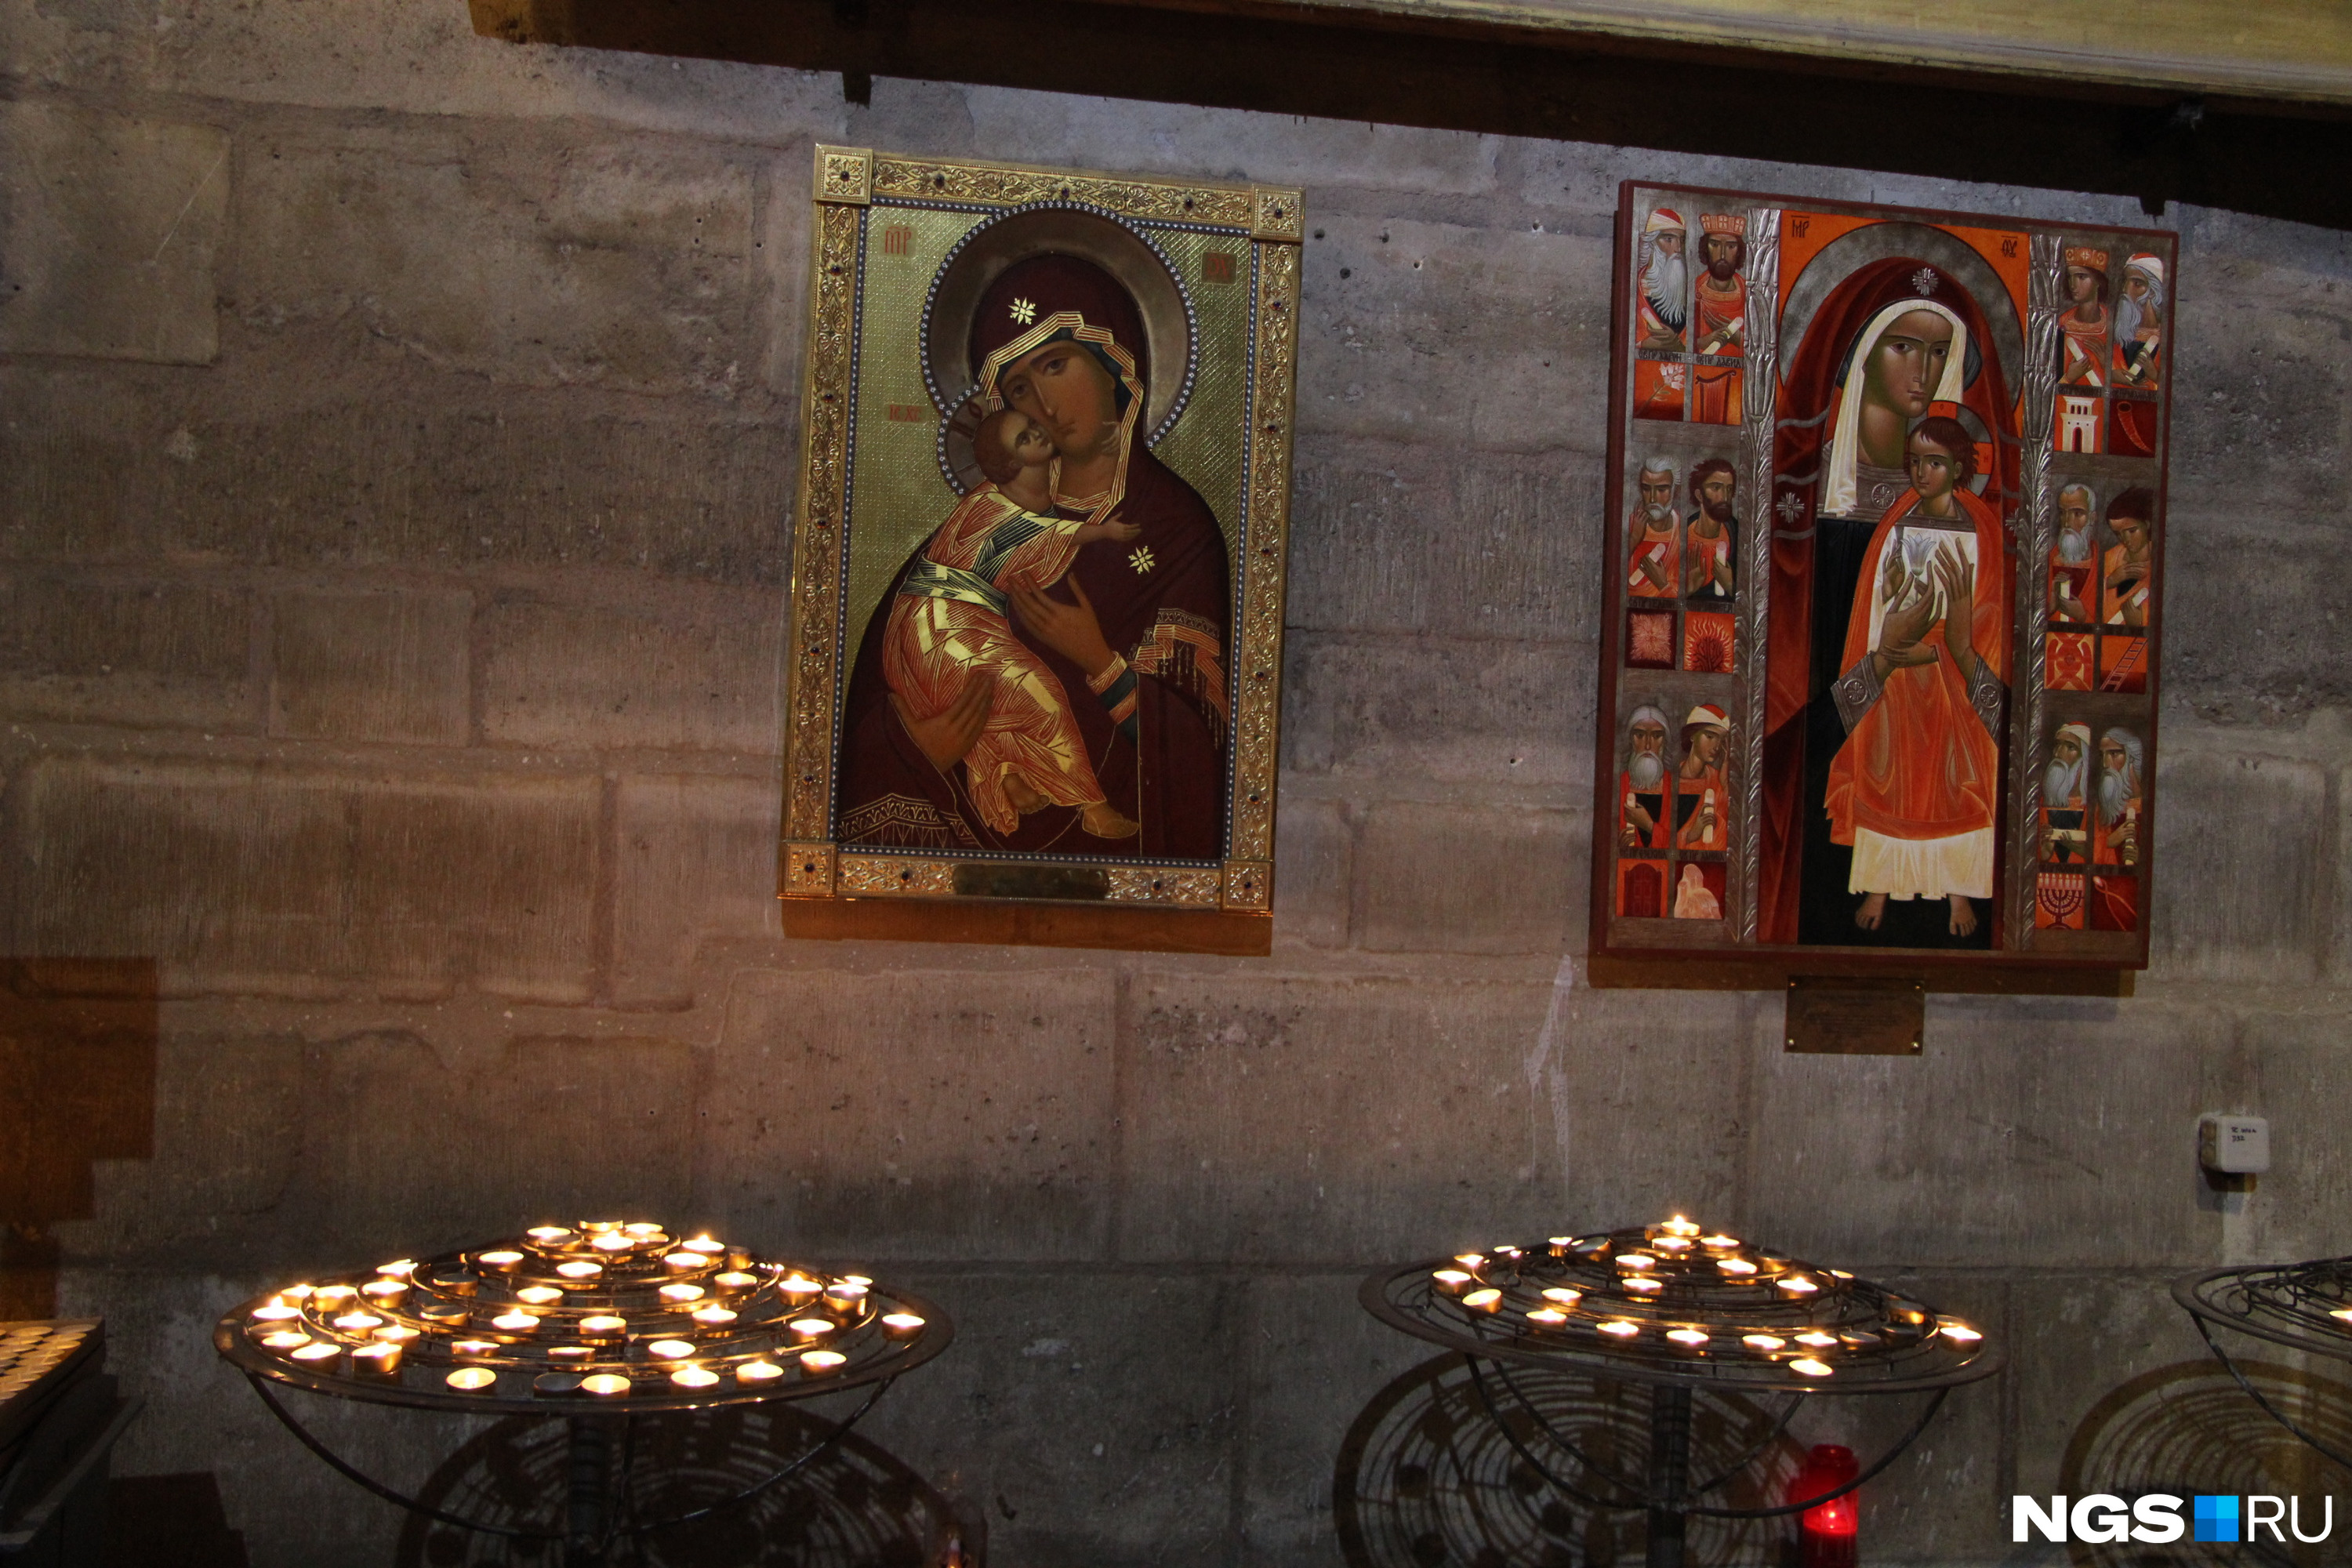 Икона Владимирской Божьей Матери (слева) и грекокатолическая икона в соборе Нотр-Дам. Их судьба пока неизвестна